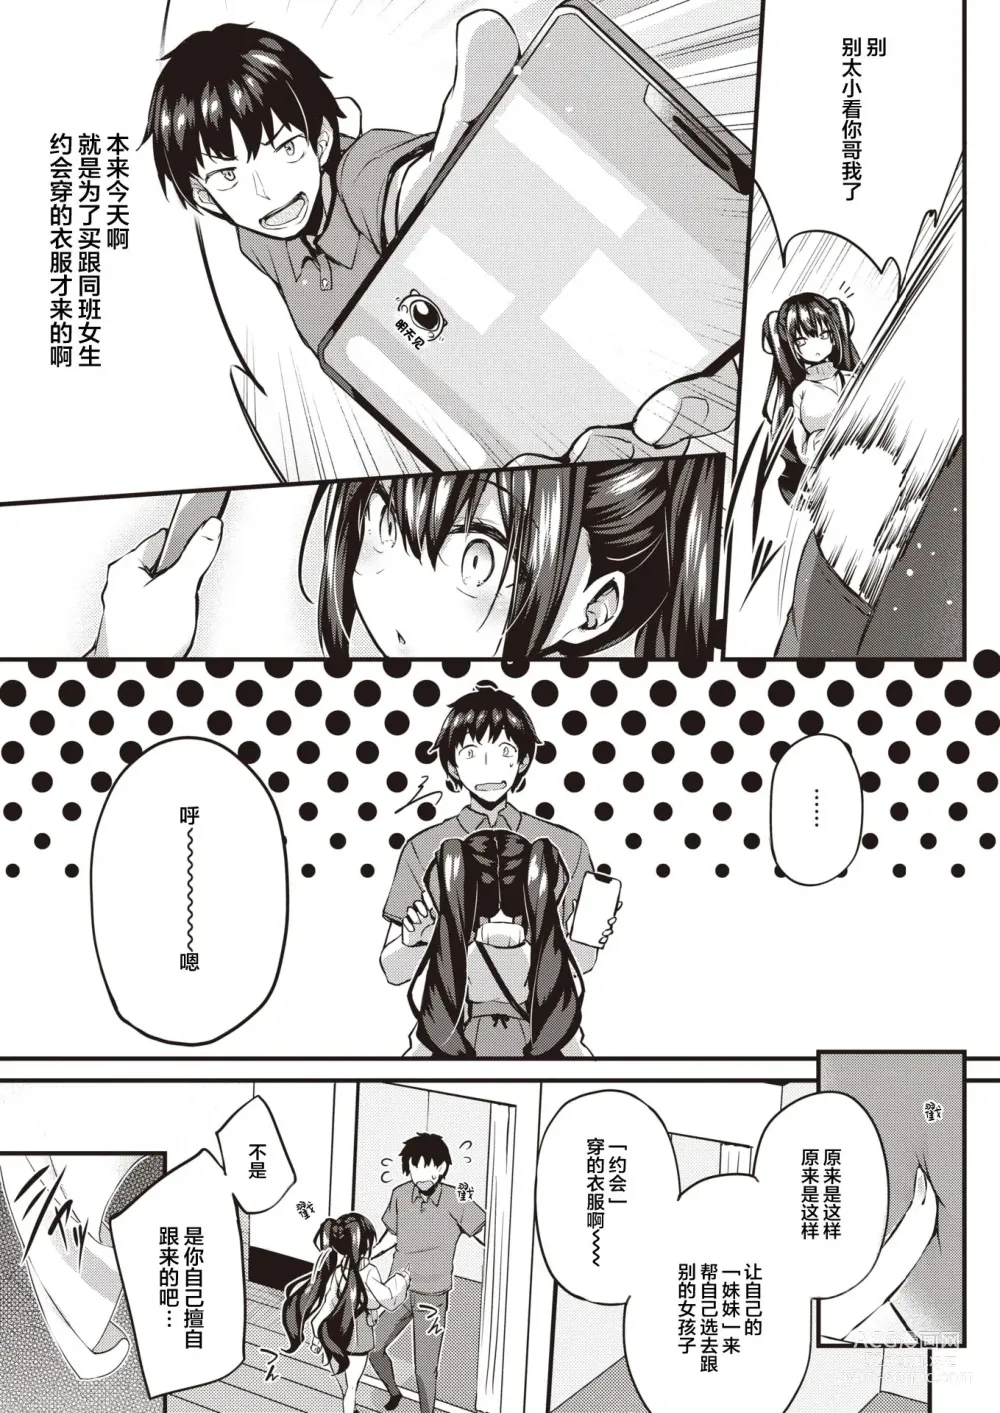 Page 3 of manga Motto Oshiete Ageru